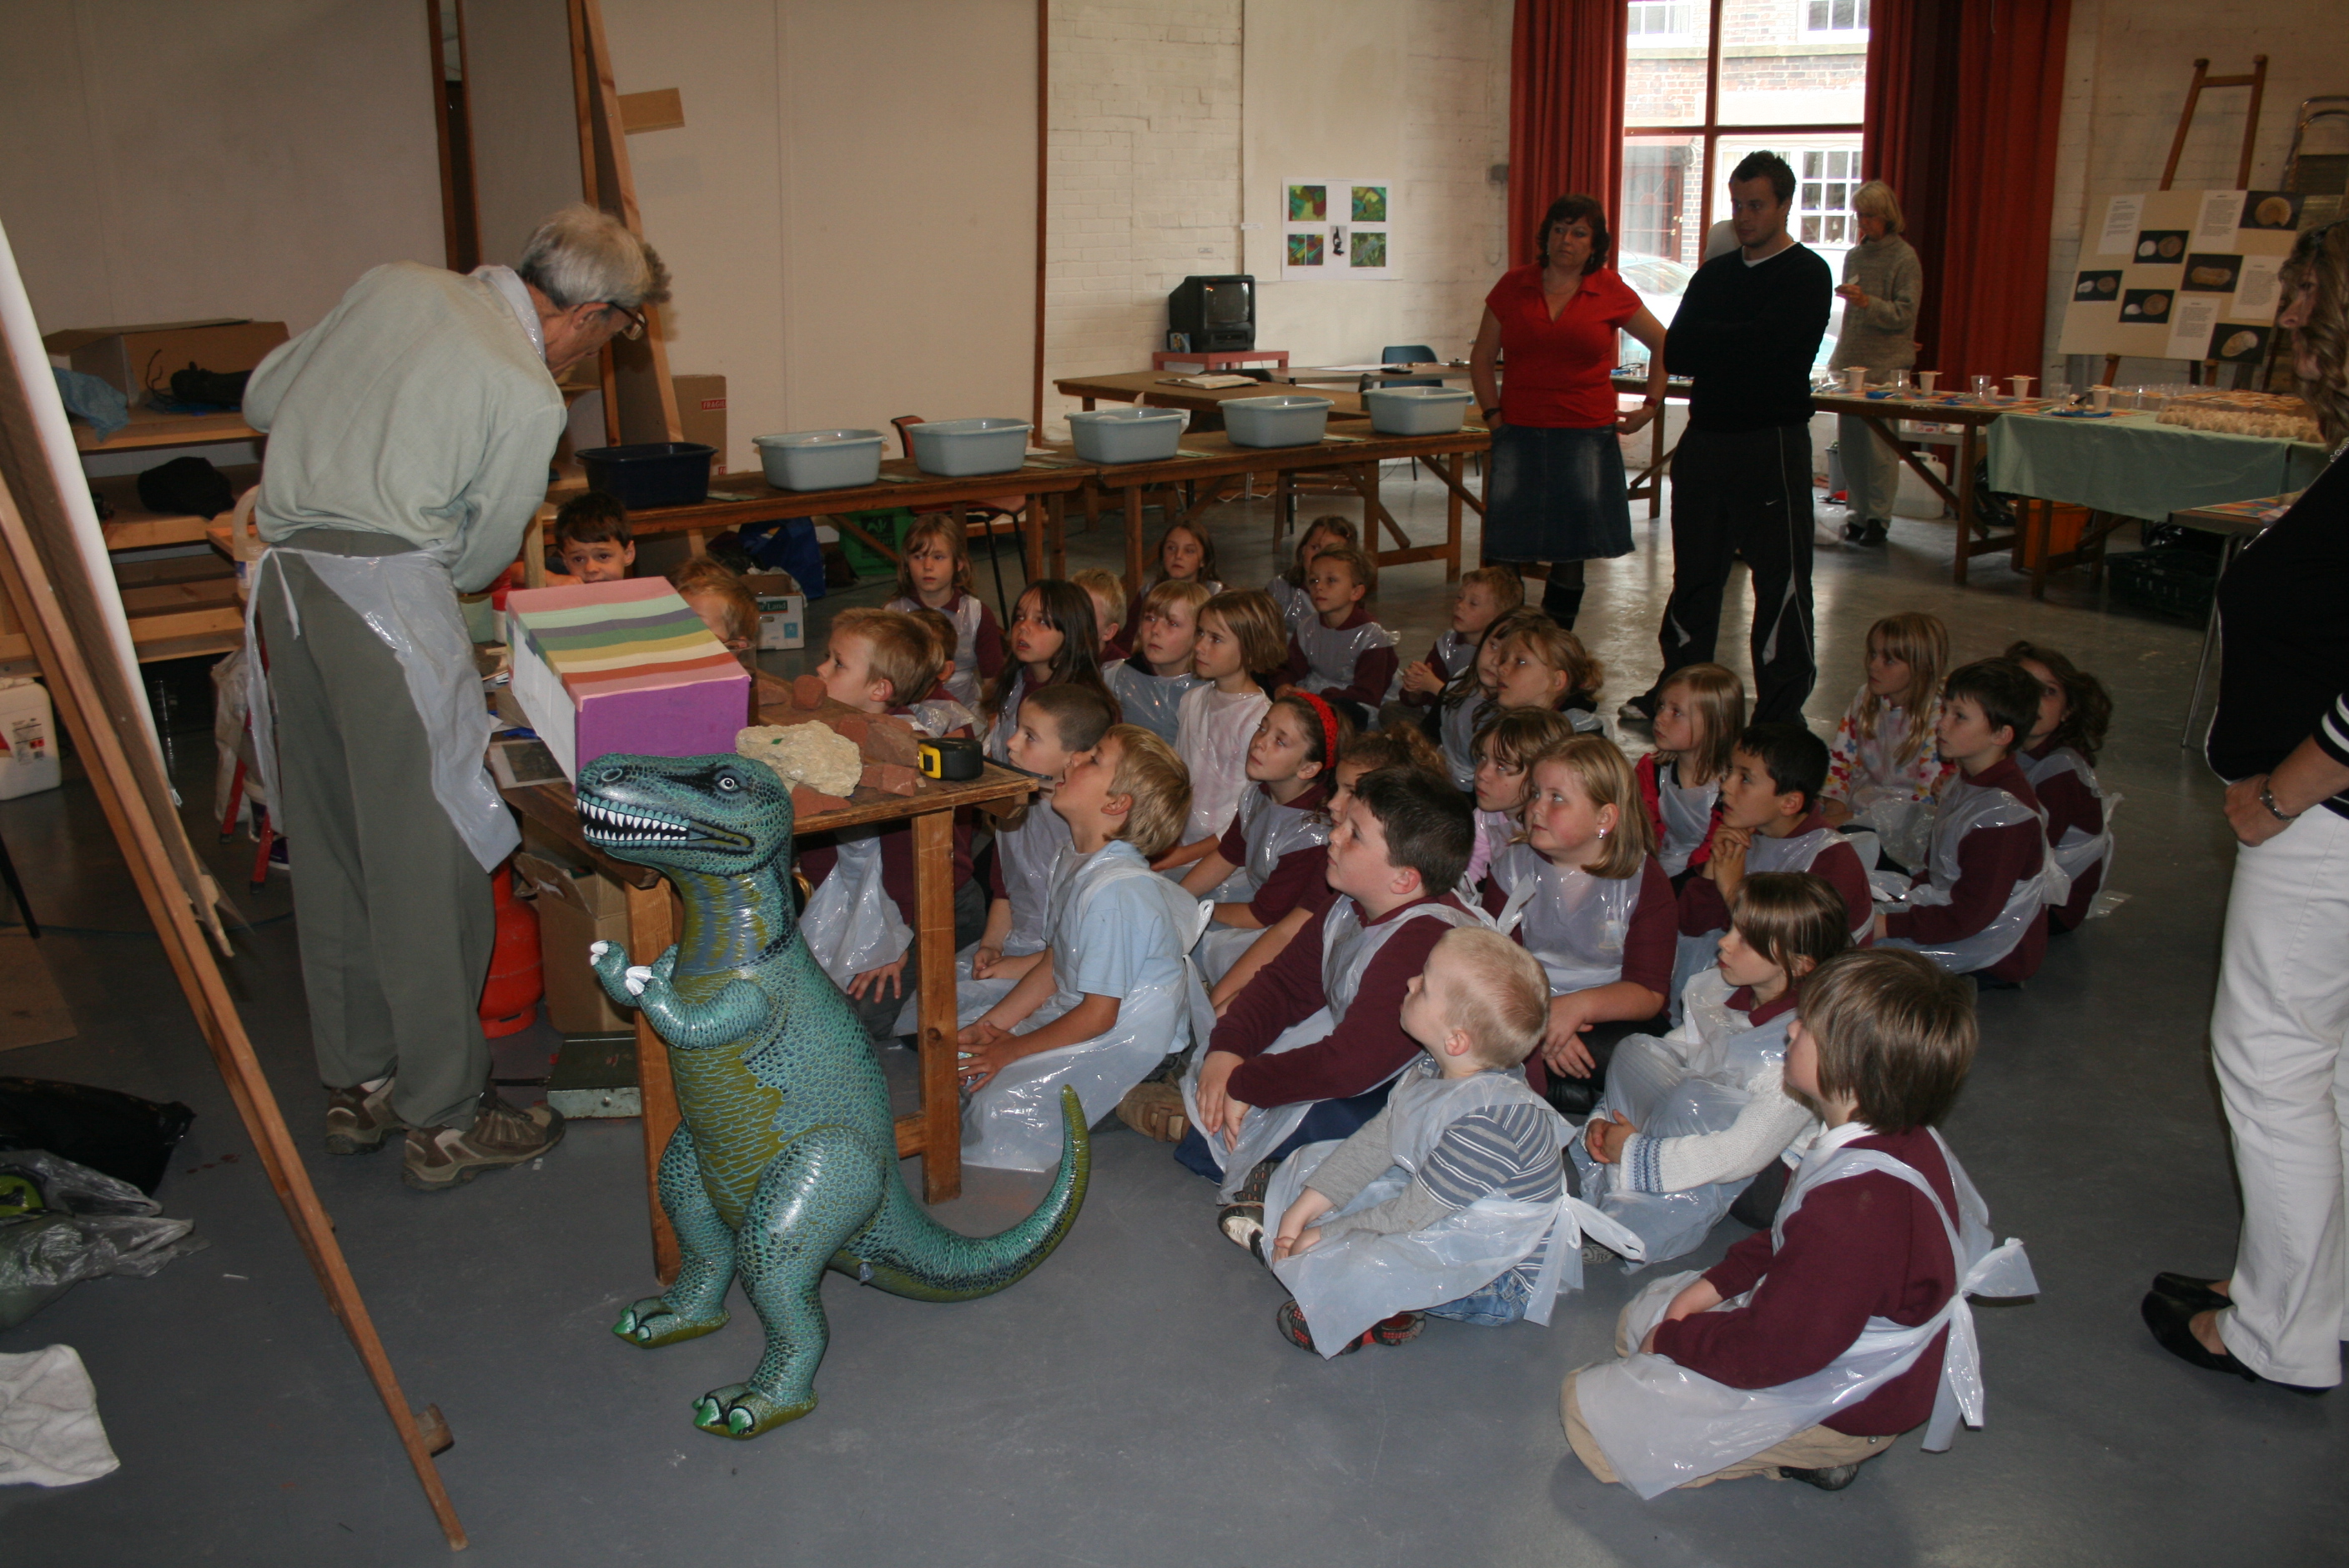 School Children at the exhibition